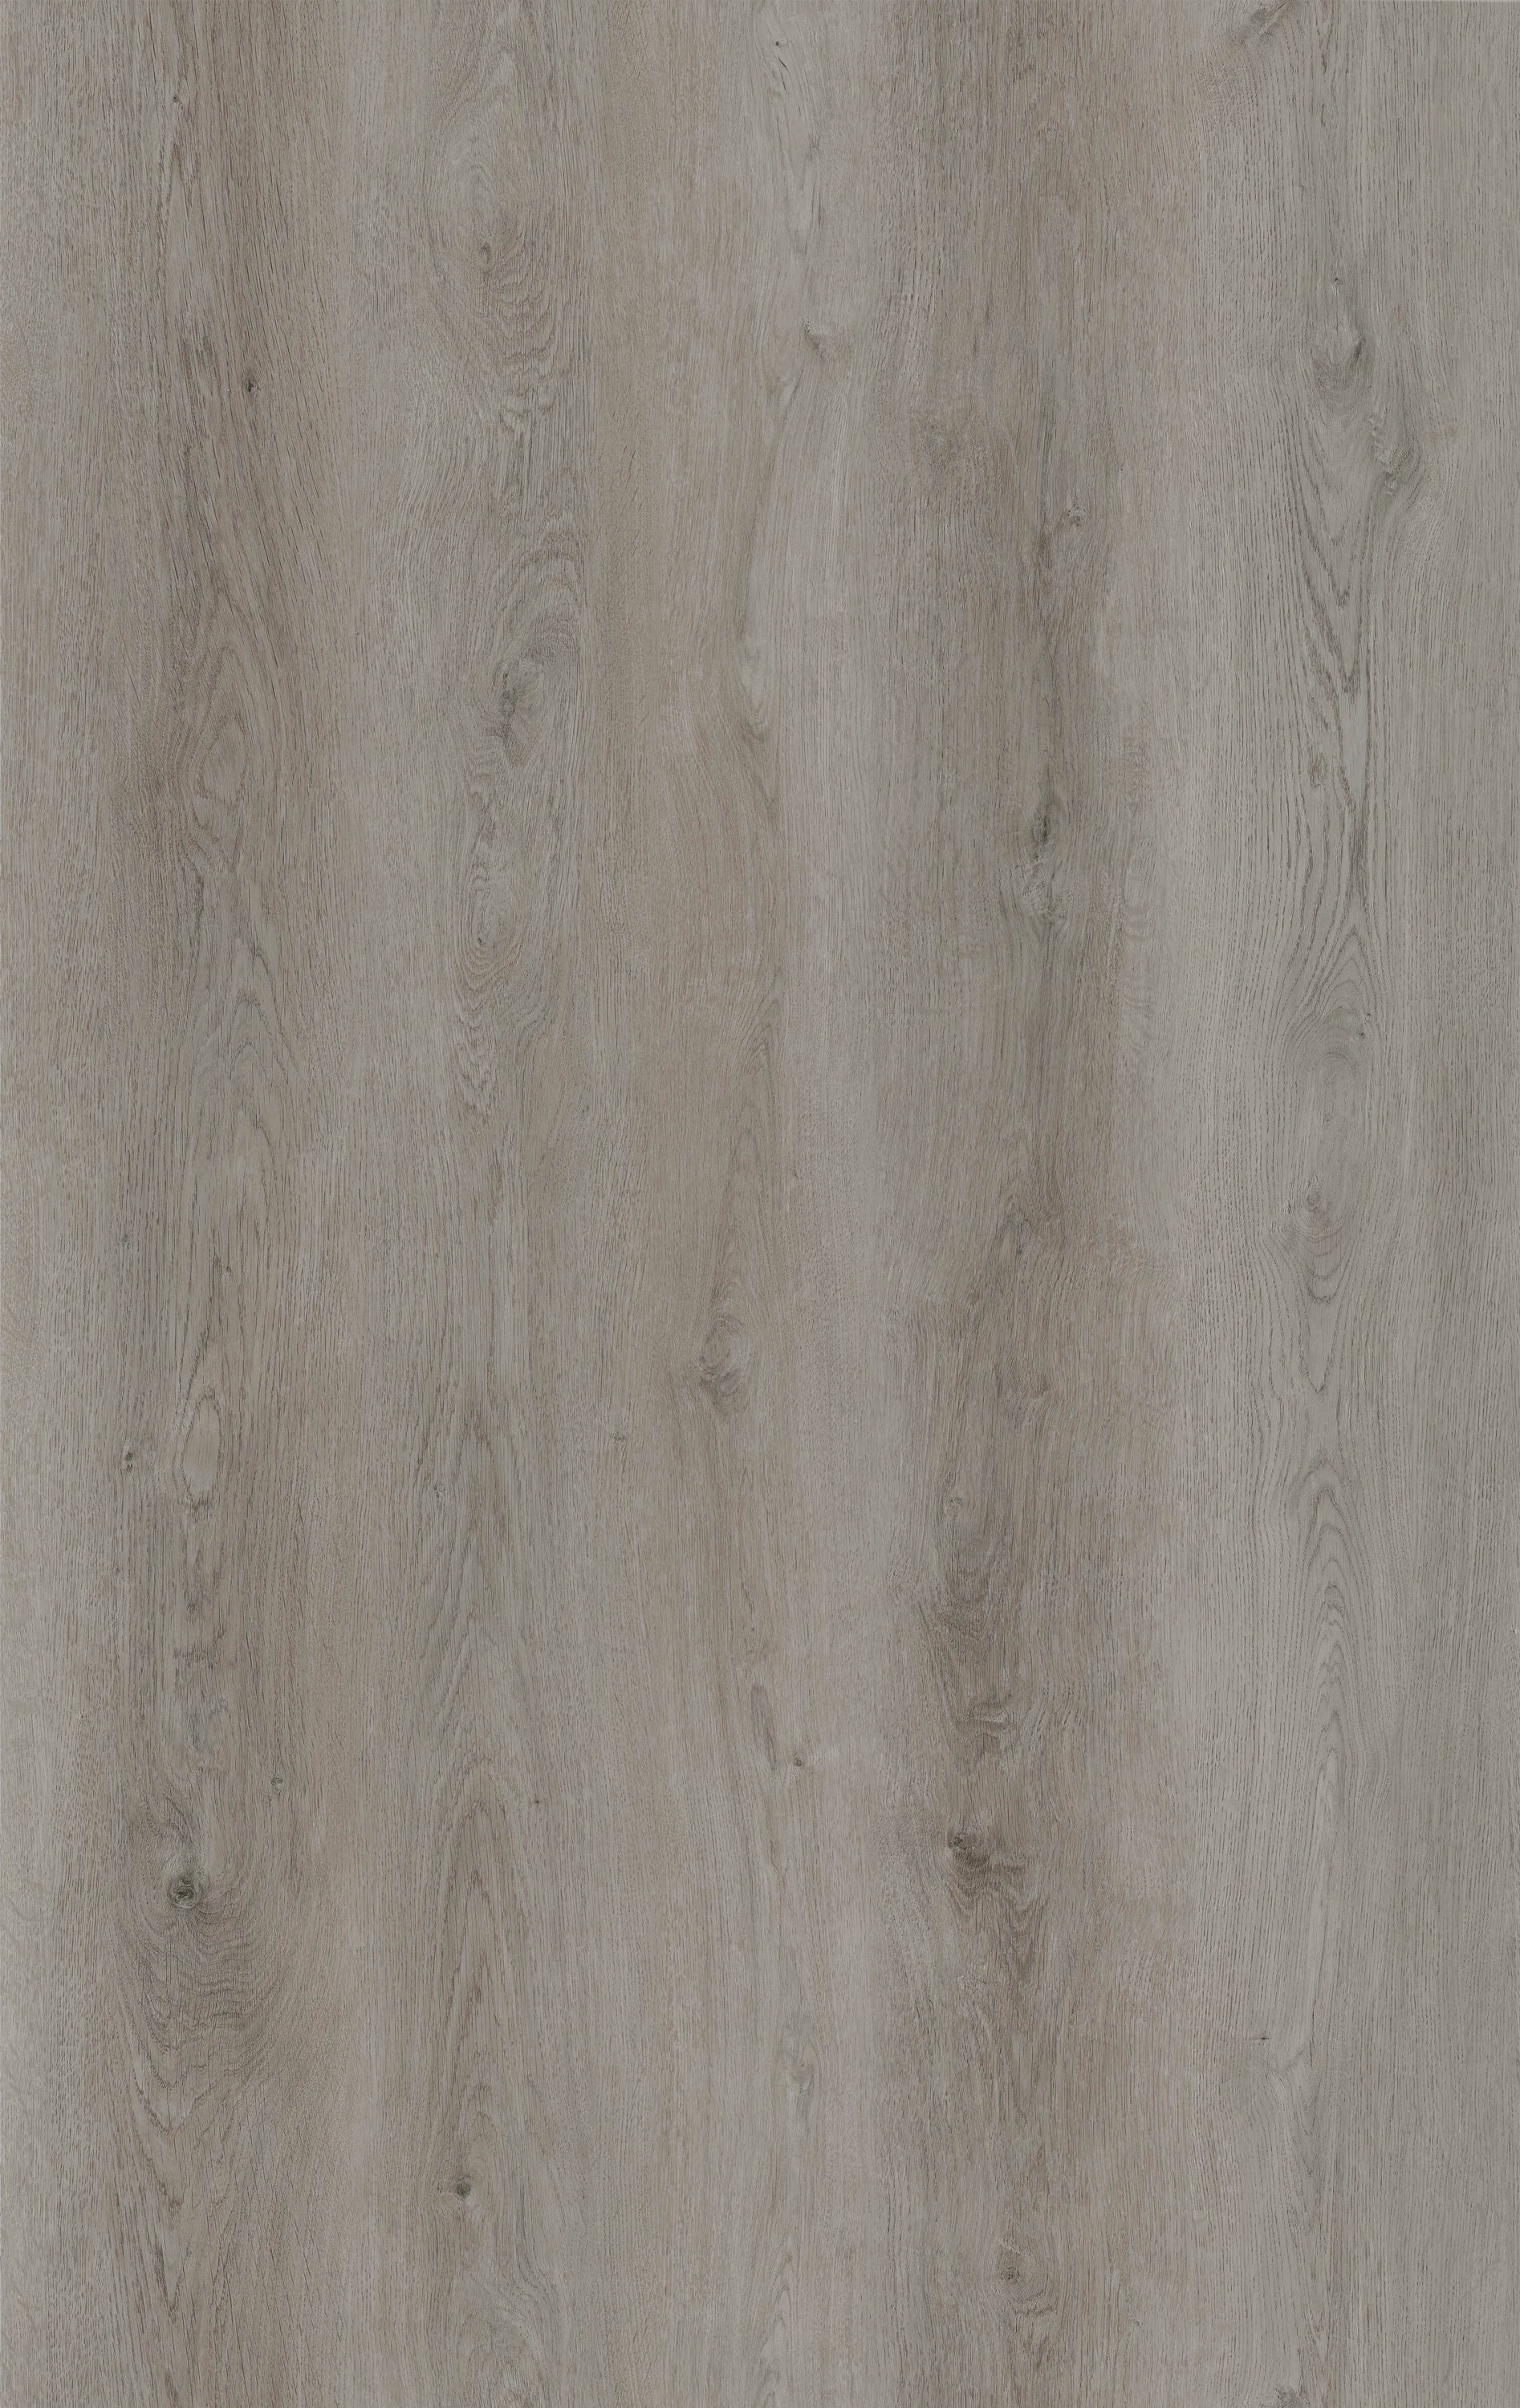 Lacheery Grey White Peel and Stick Wood Planks for Floor 6 inchx36 inch Stick and Peel Flooring Bathroom Waterproof Floor Tile Wood Look Vinyl Plank